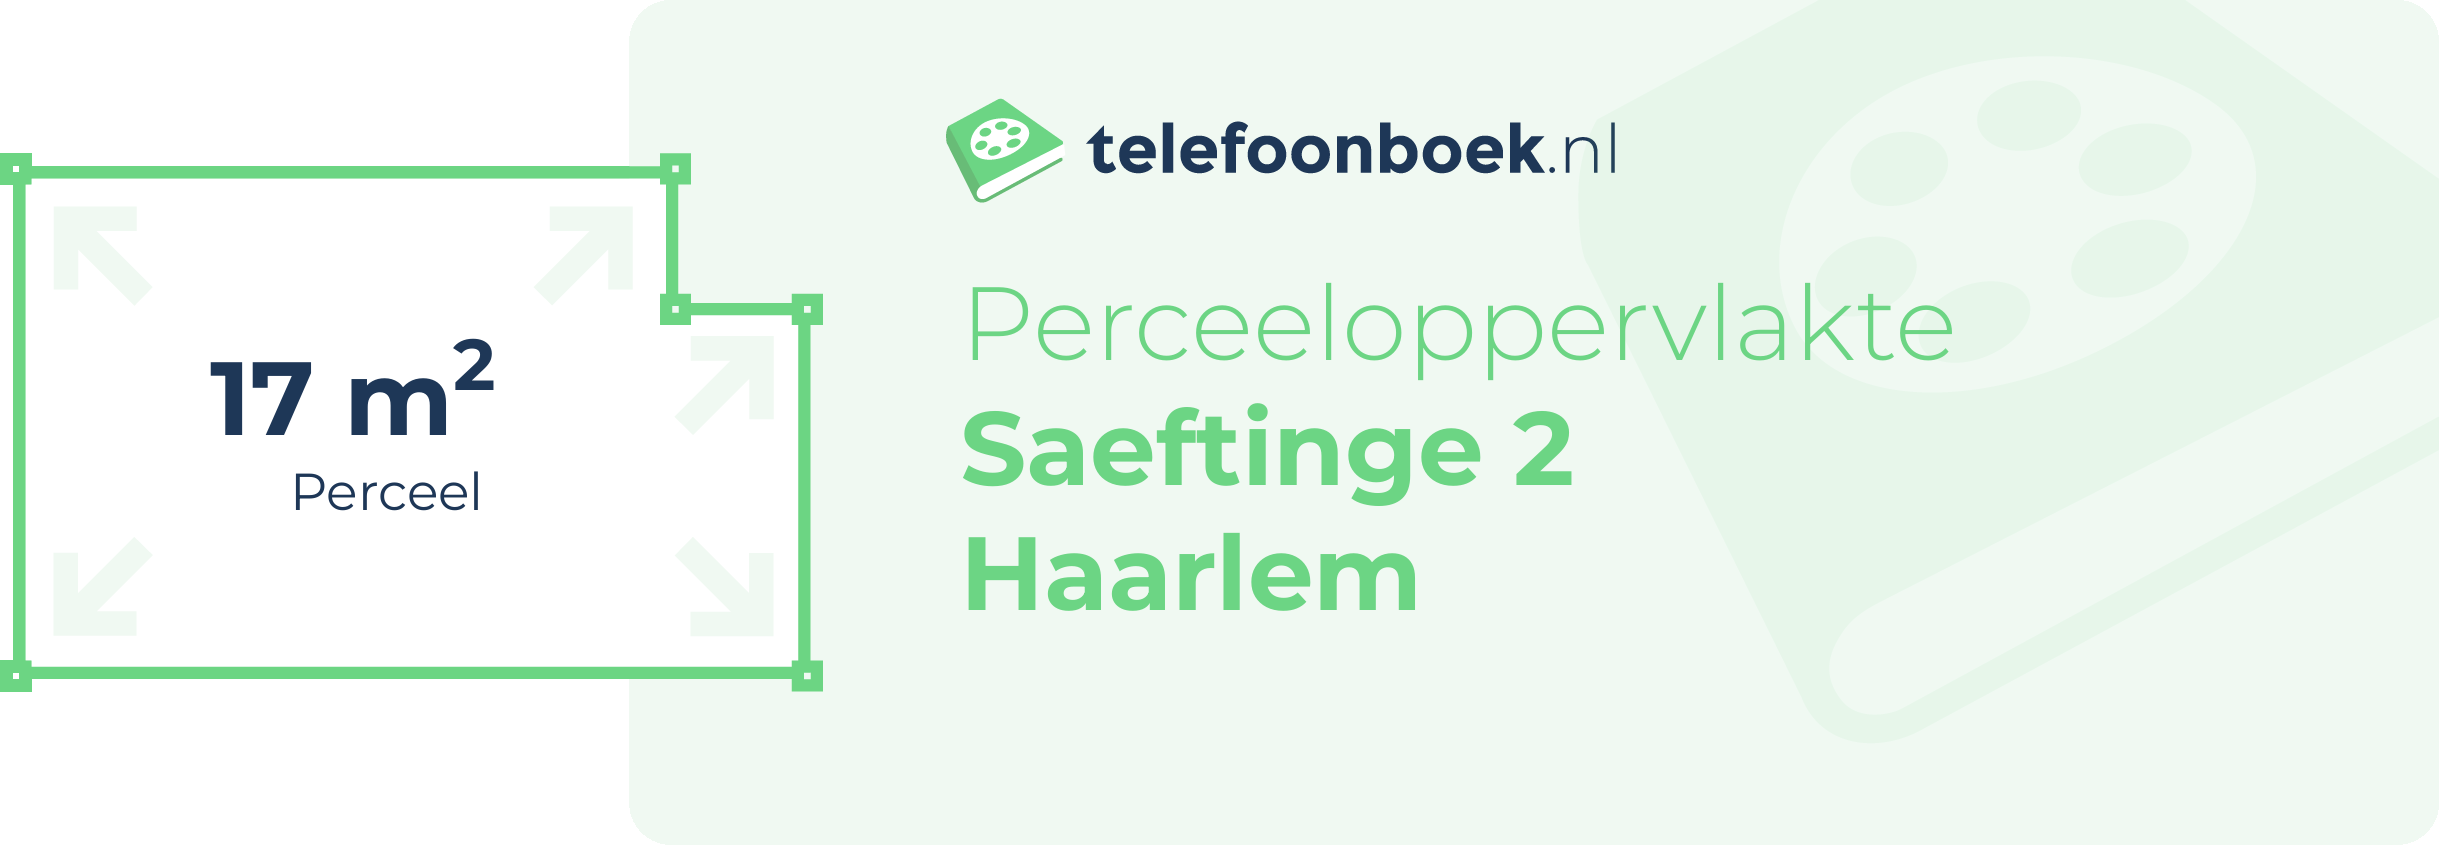 Perceeloppervlakte Saeftinge 2 Haarlem